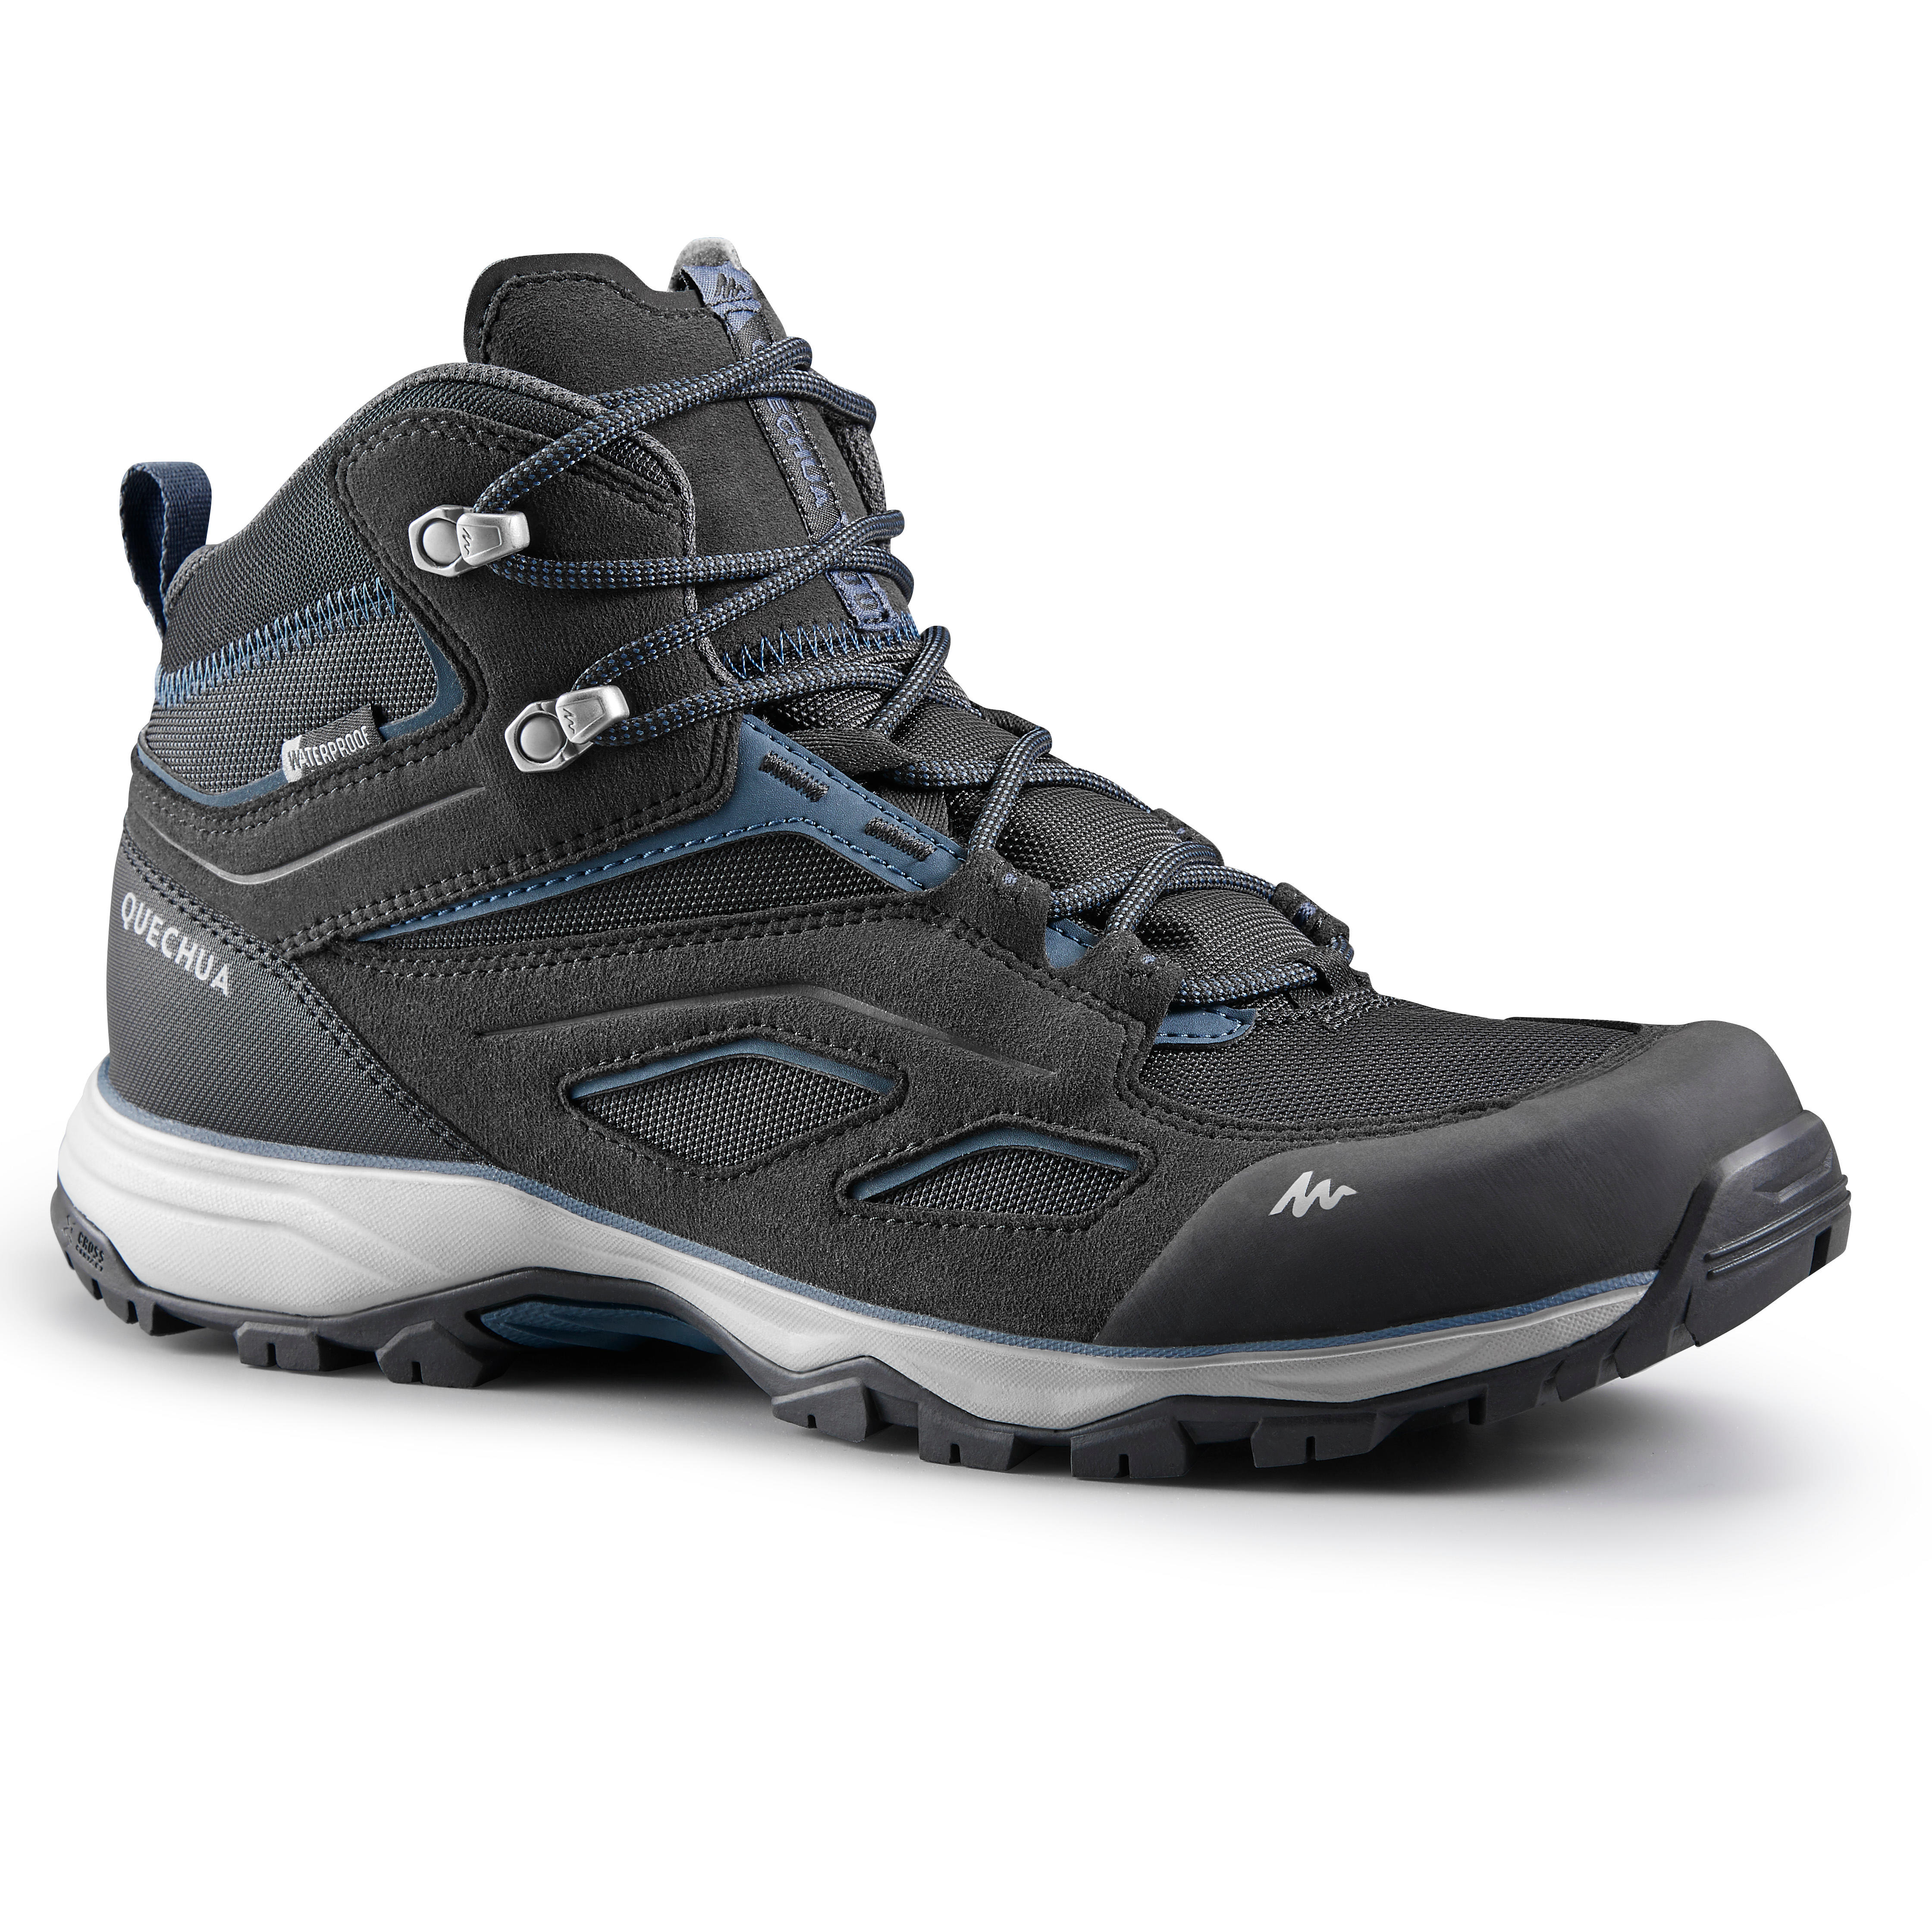 QUECHUA Chaussures imperméables de randonnée montagne - MH100 Mid Noir - Homme - QUECHUA - 45